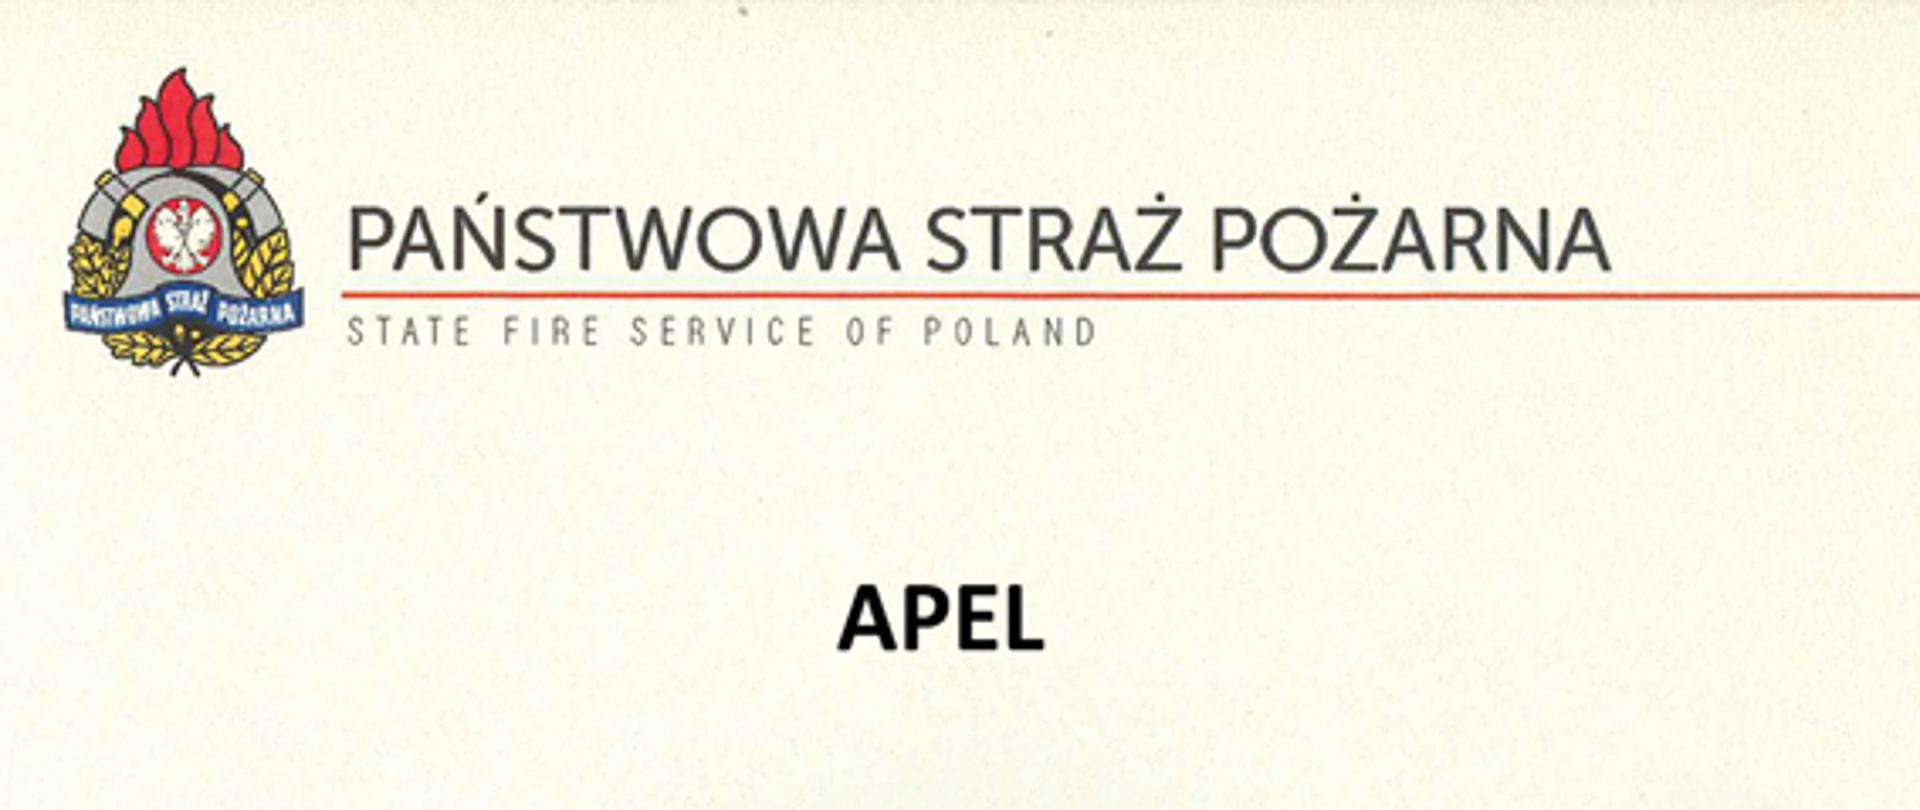 Logo PSP i napis Państwowa Straż Pożarna, na środku duży napis APEL, pod nim prośba Komendanta Głównego o oddawanie osocza.